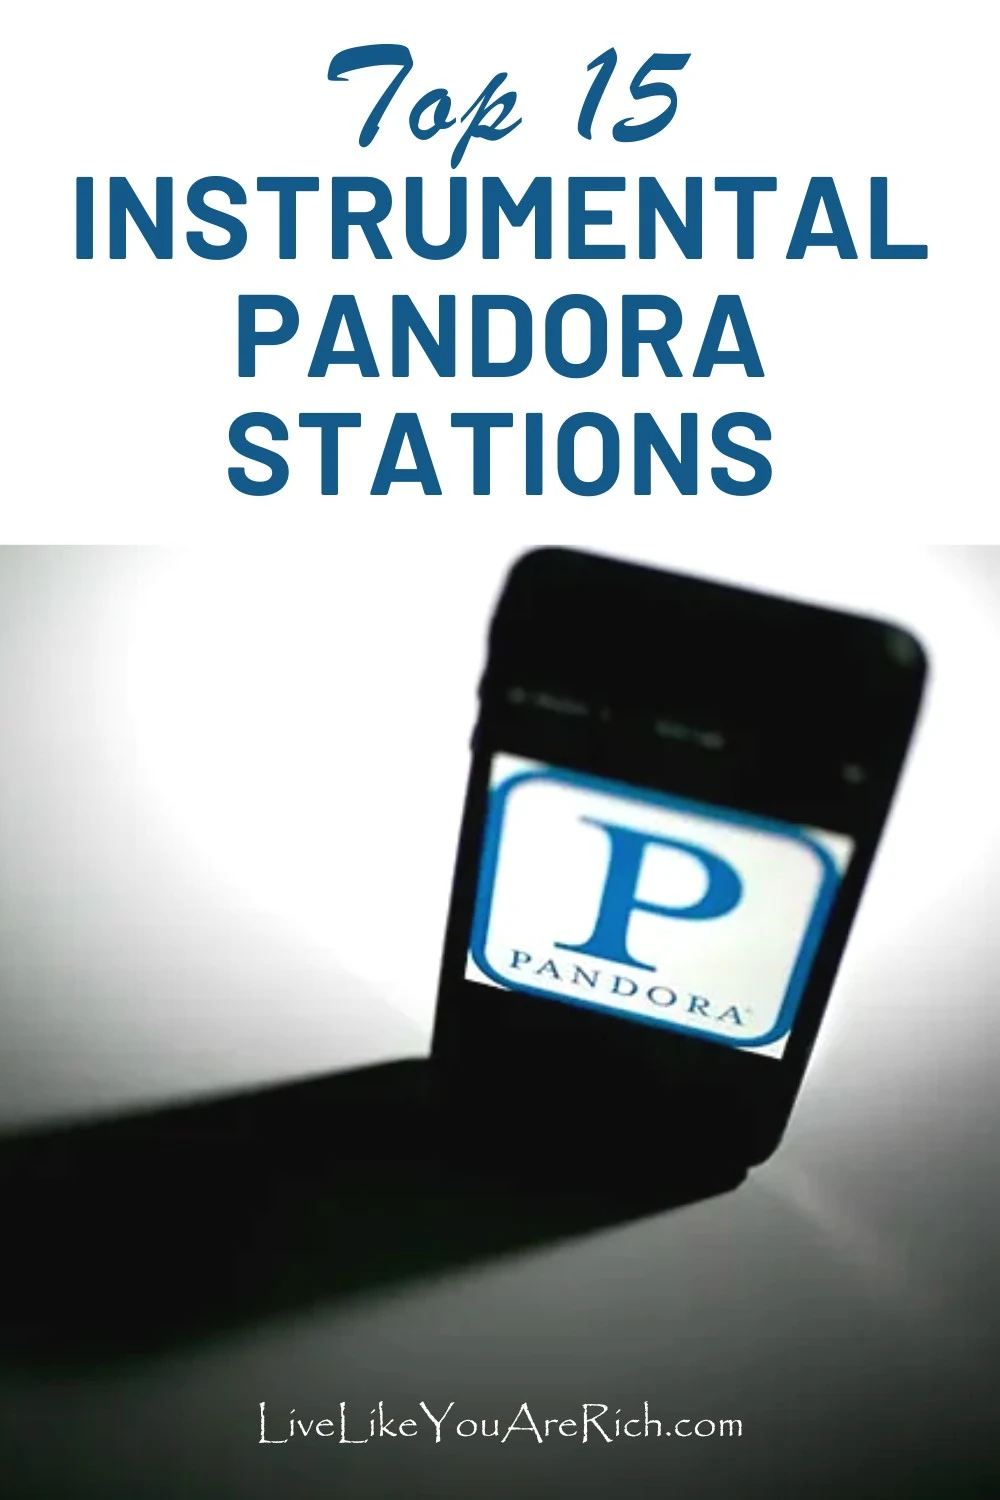 Top 15 Instrumental Pandora Stations